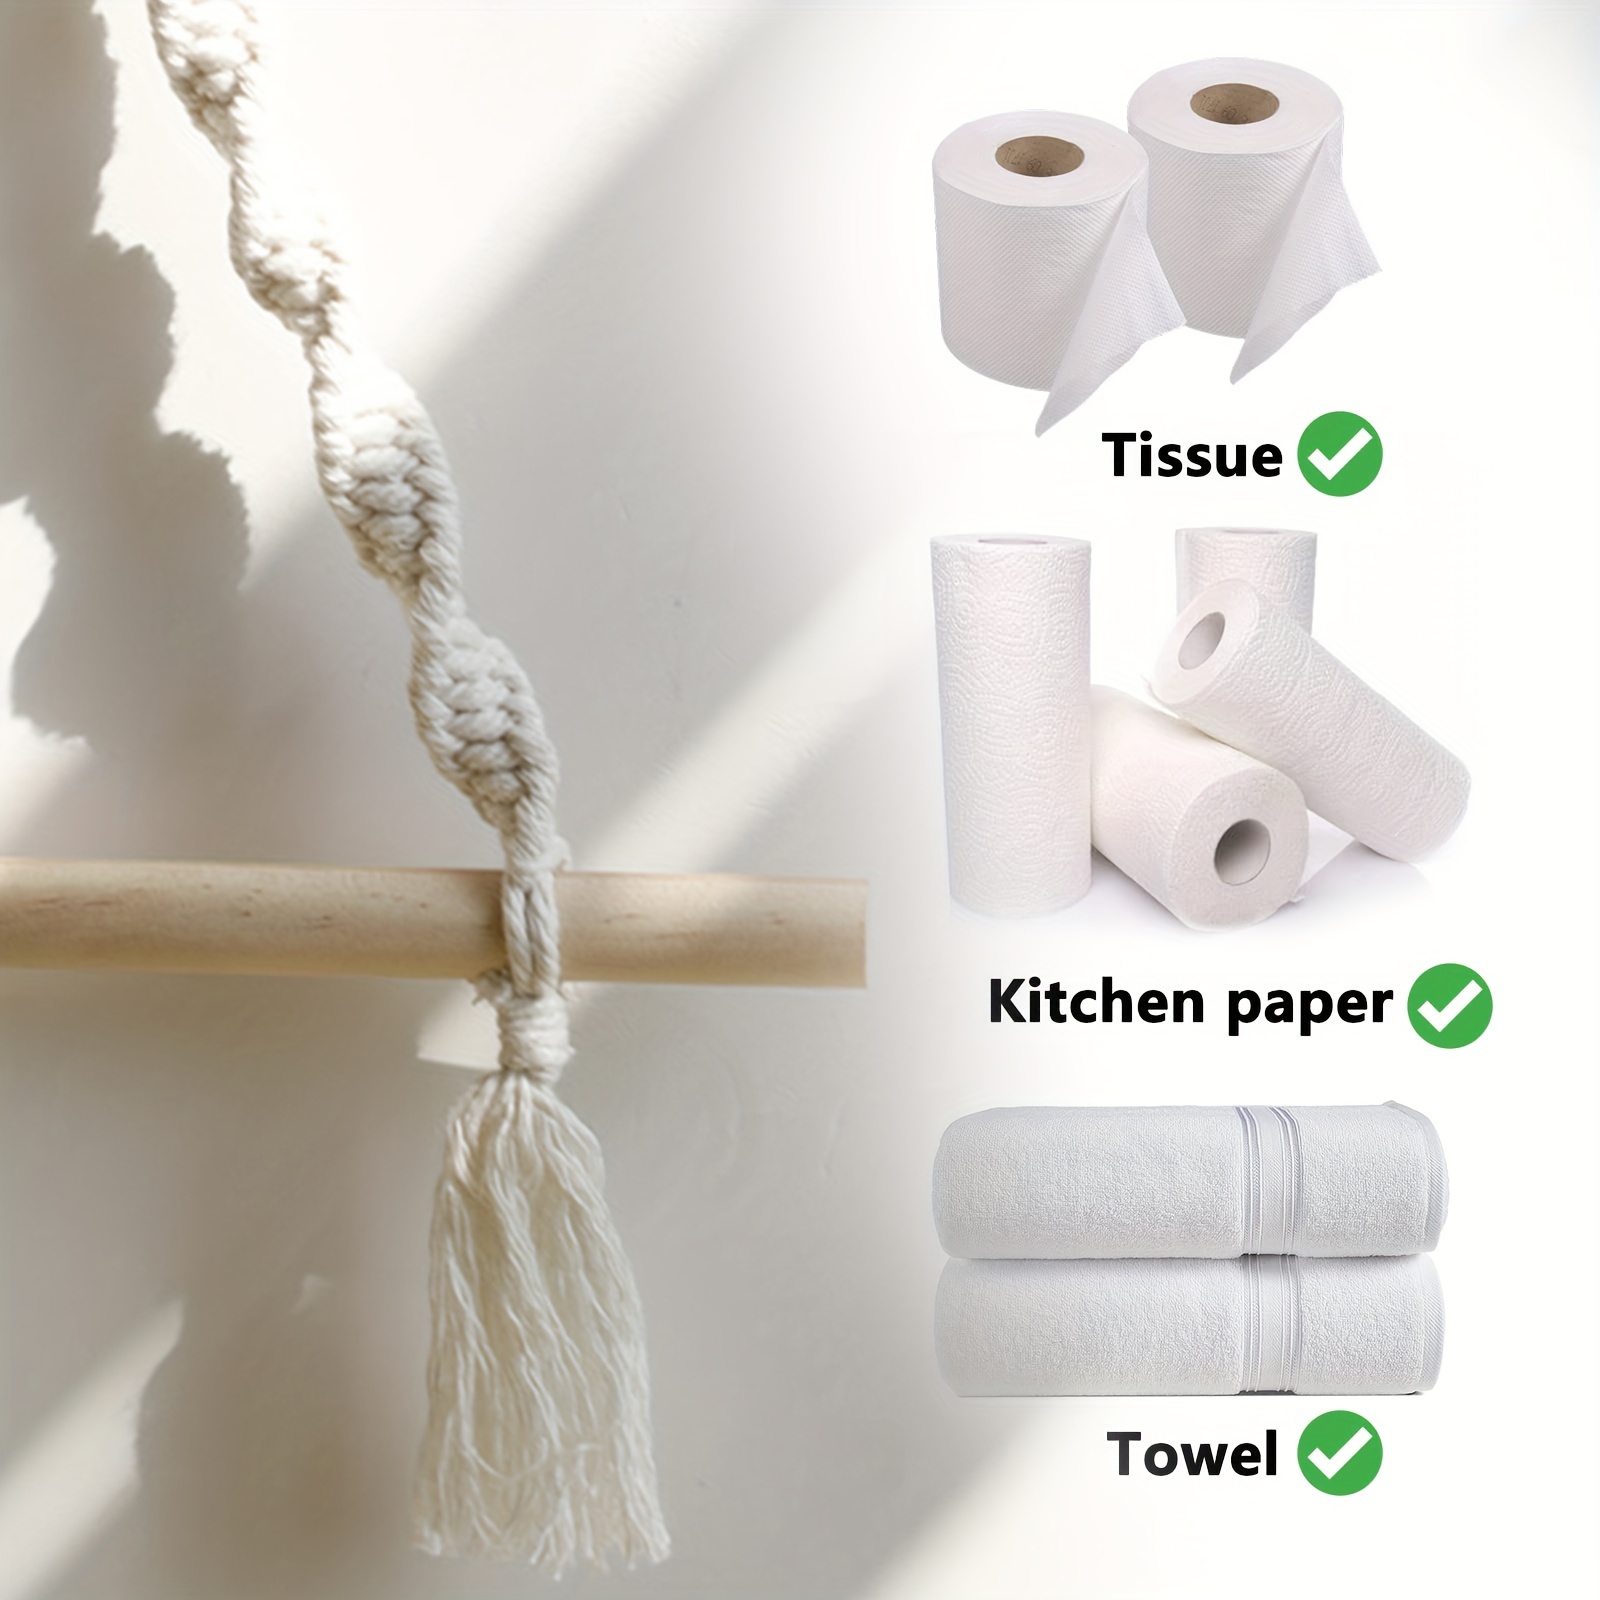  Soporte para papel higiénico : Herramientas y Mejoras del Hogar